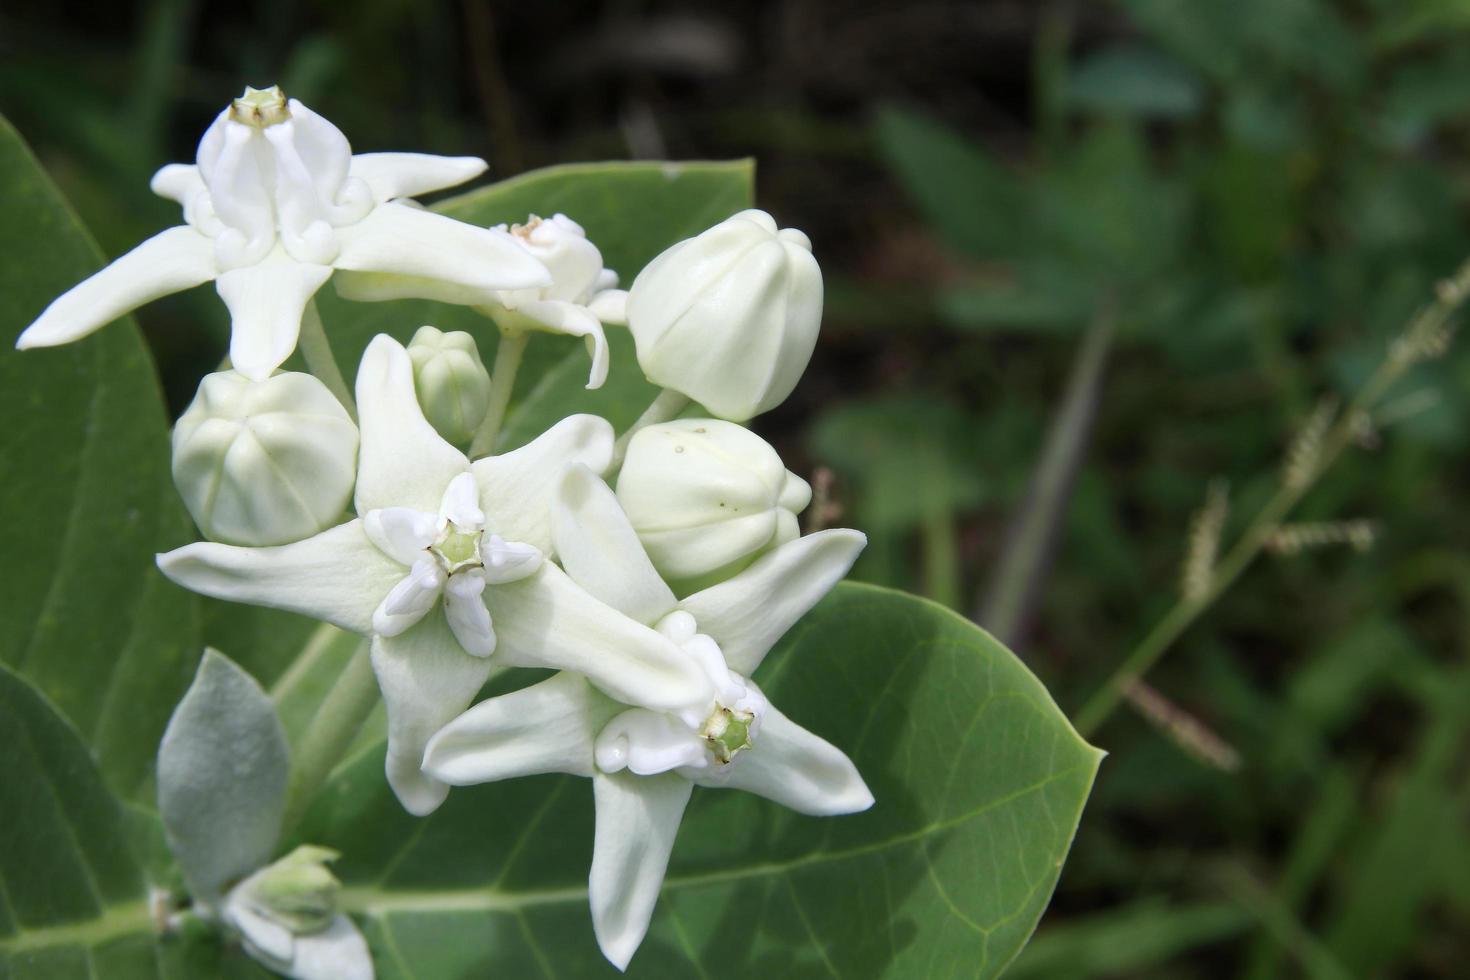 capullo blanco y flor floreciente de algodoncillo indio gigante o golondrina gigante en rama y fondo de hojas de color verde claro, tailandia. foto